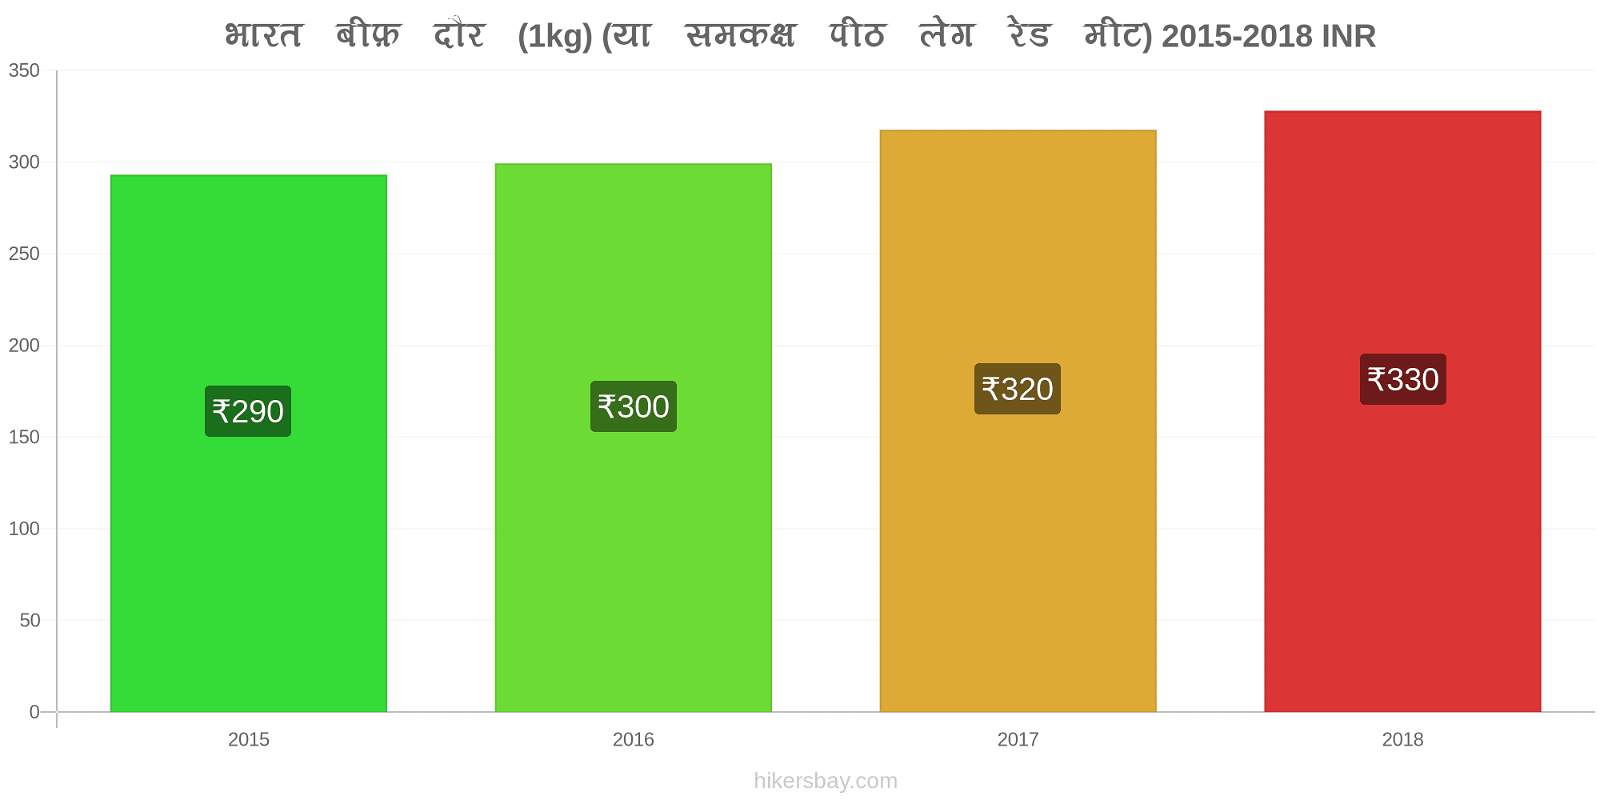 भारत मूल्य में परिवर्तन गोमांस (1kg) (या इसी तरह का लाल मांस) hikersbay.com